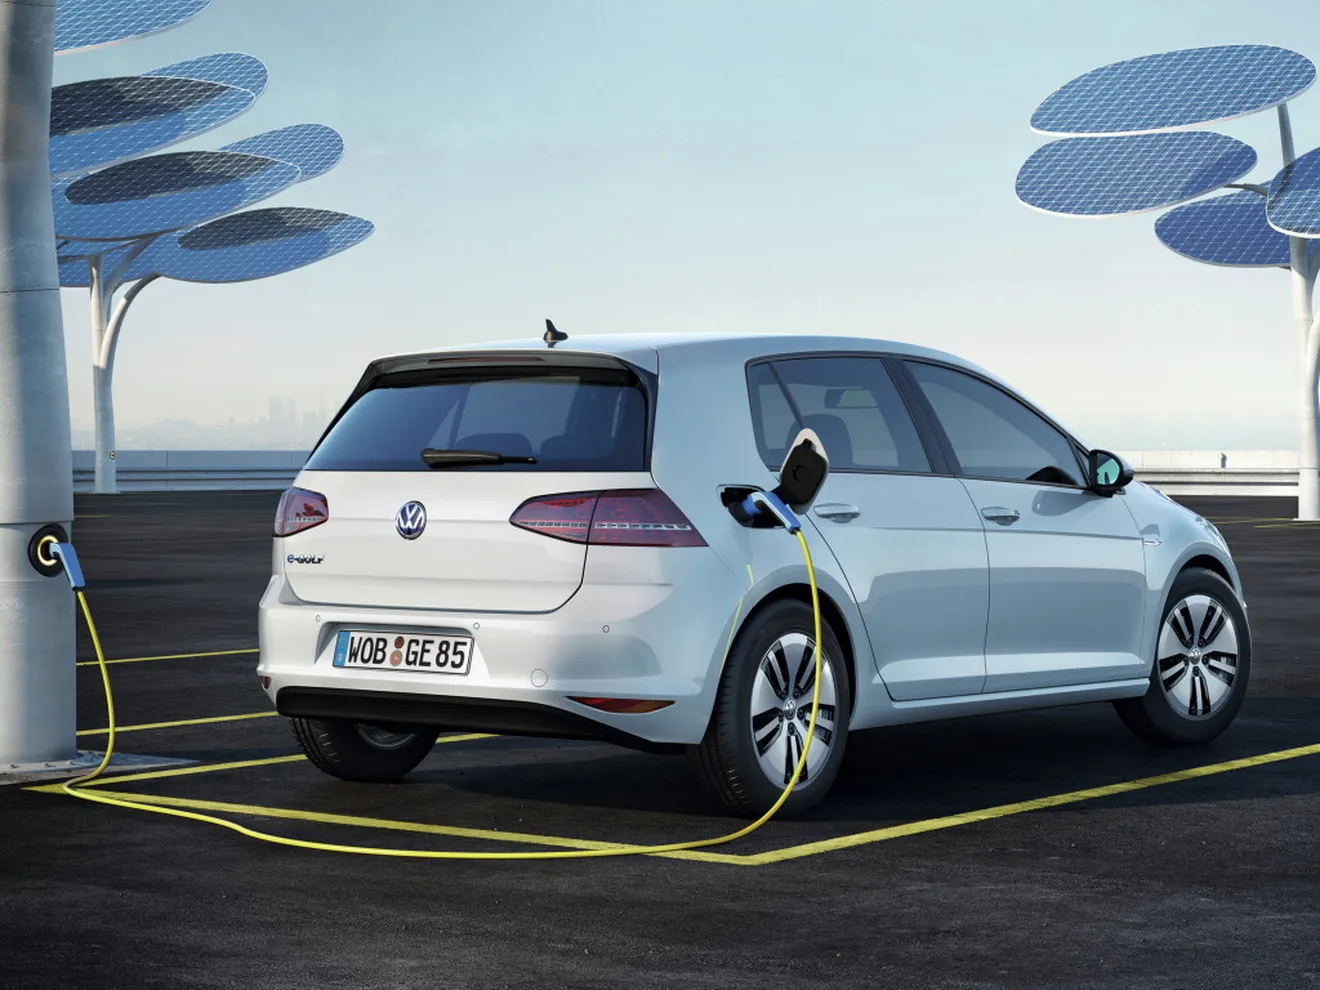 Alemania potenciará el coche eléctrico aprovechando el #Dieselgate